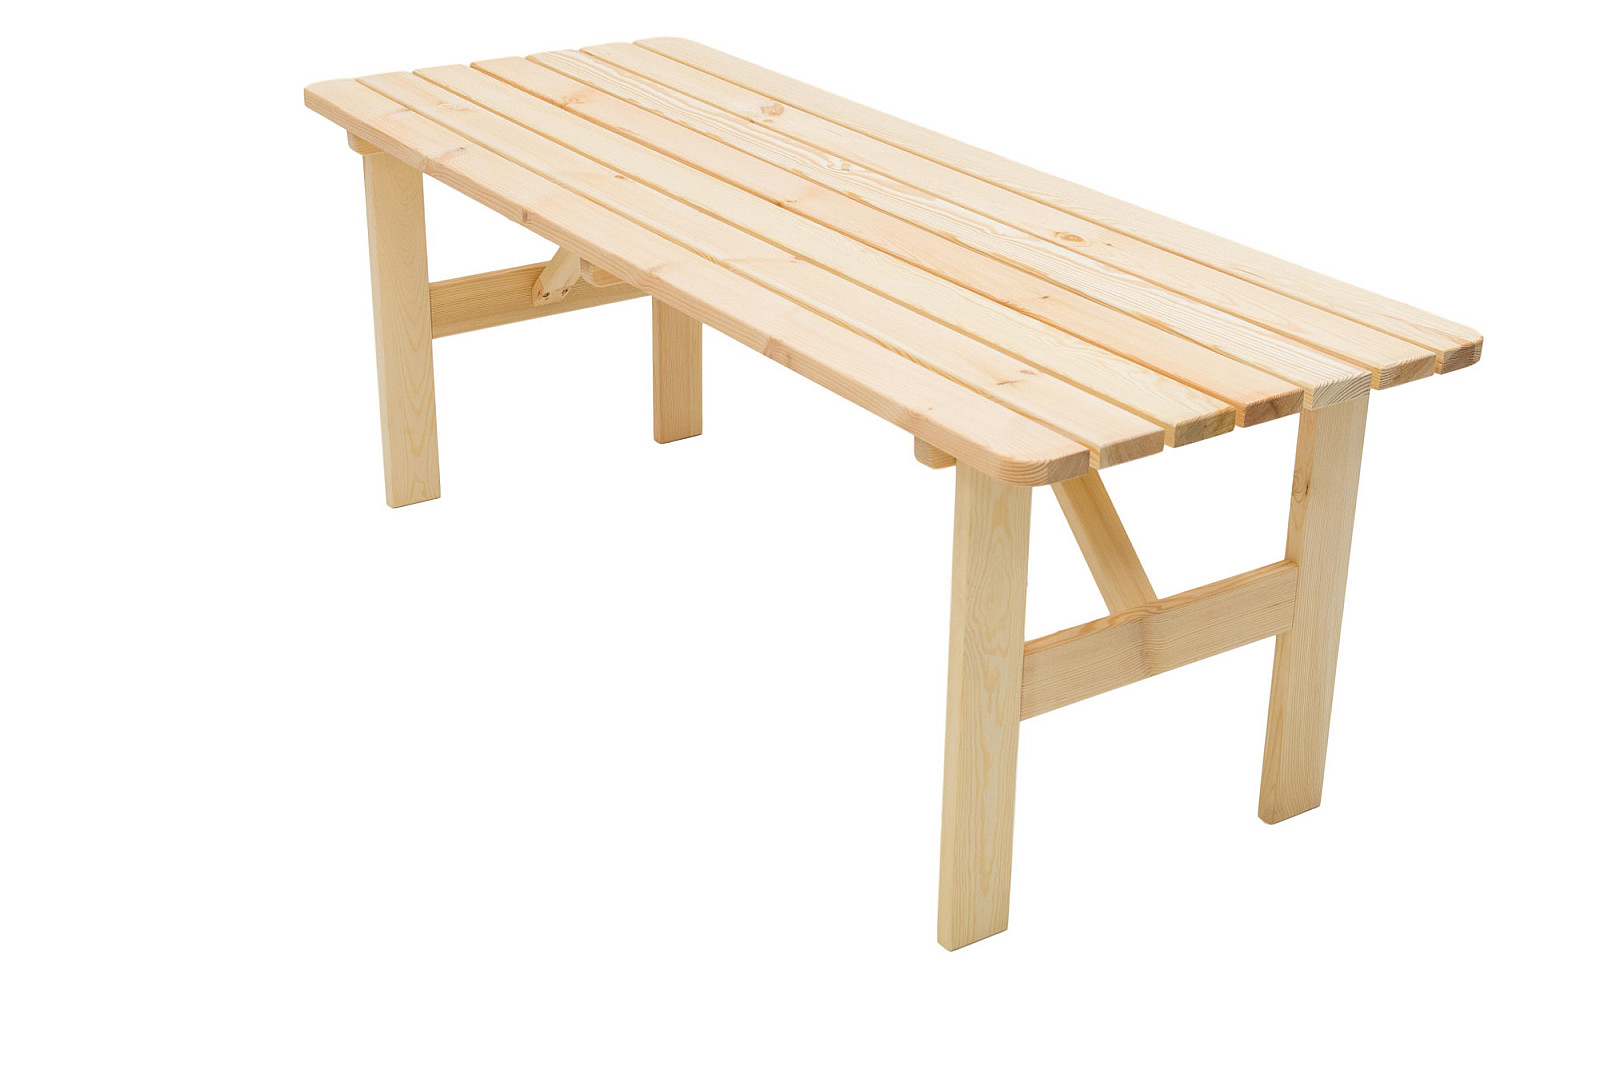 Masívny stôl z borovice drevo 30 mm (rôzne dĺžky) 150 cm